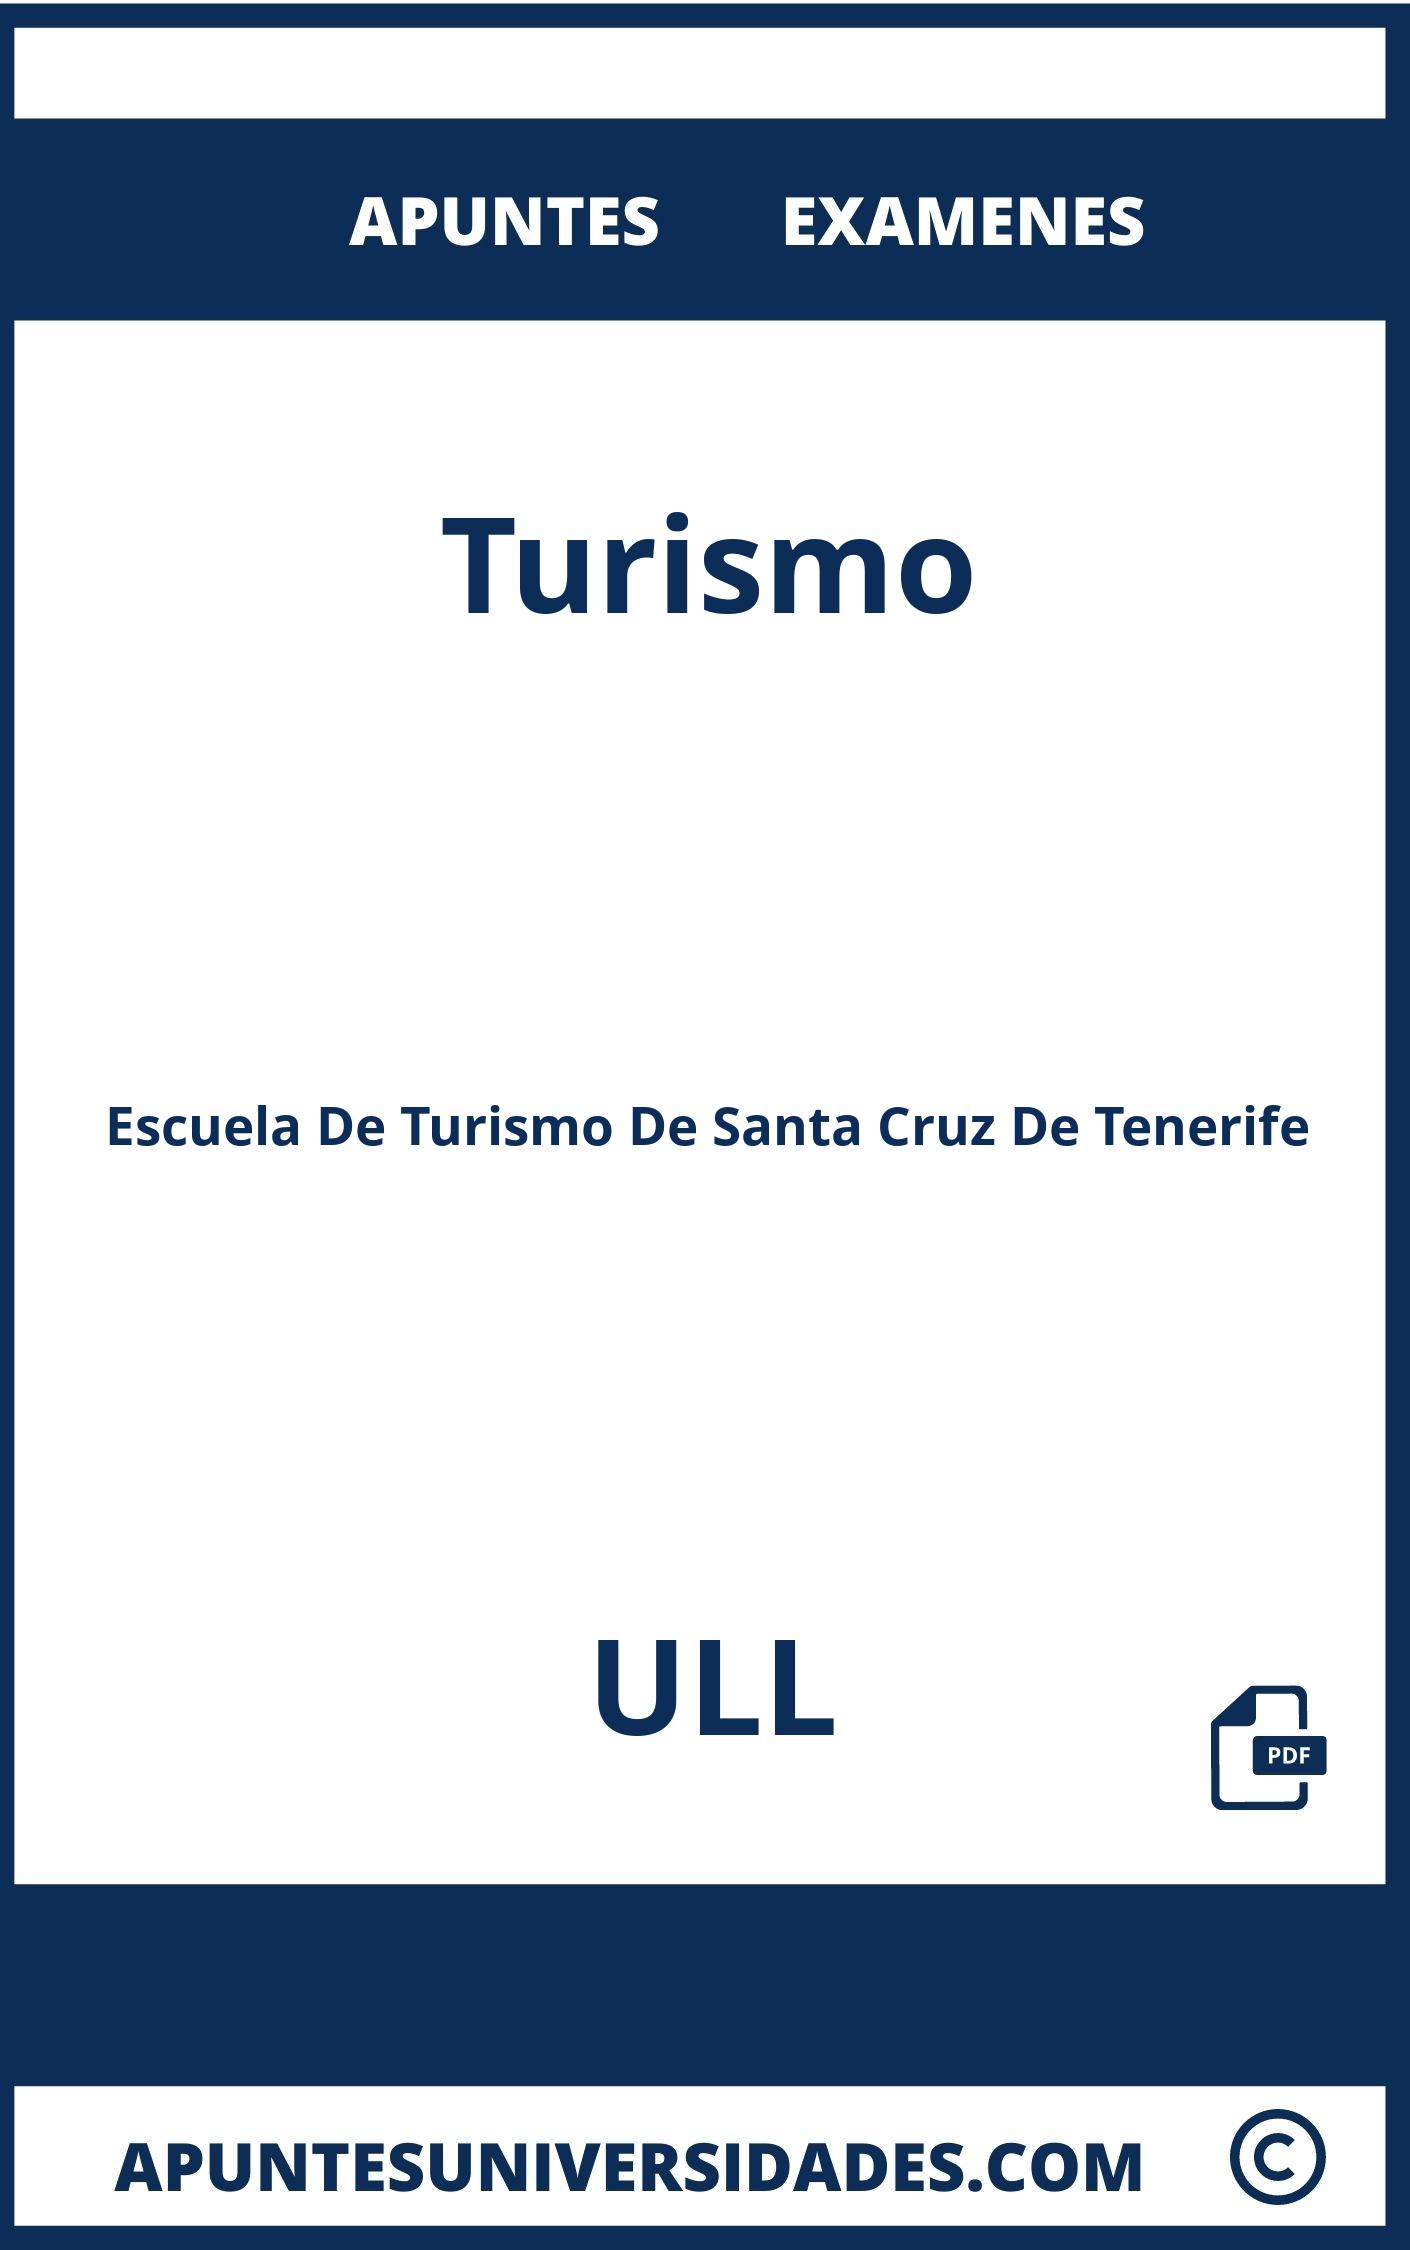 Apuntes Turismo ULL y Examenes